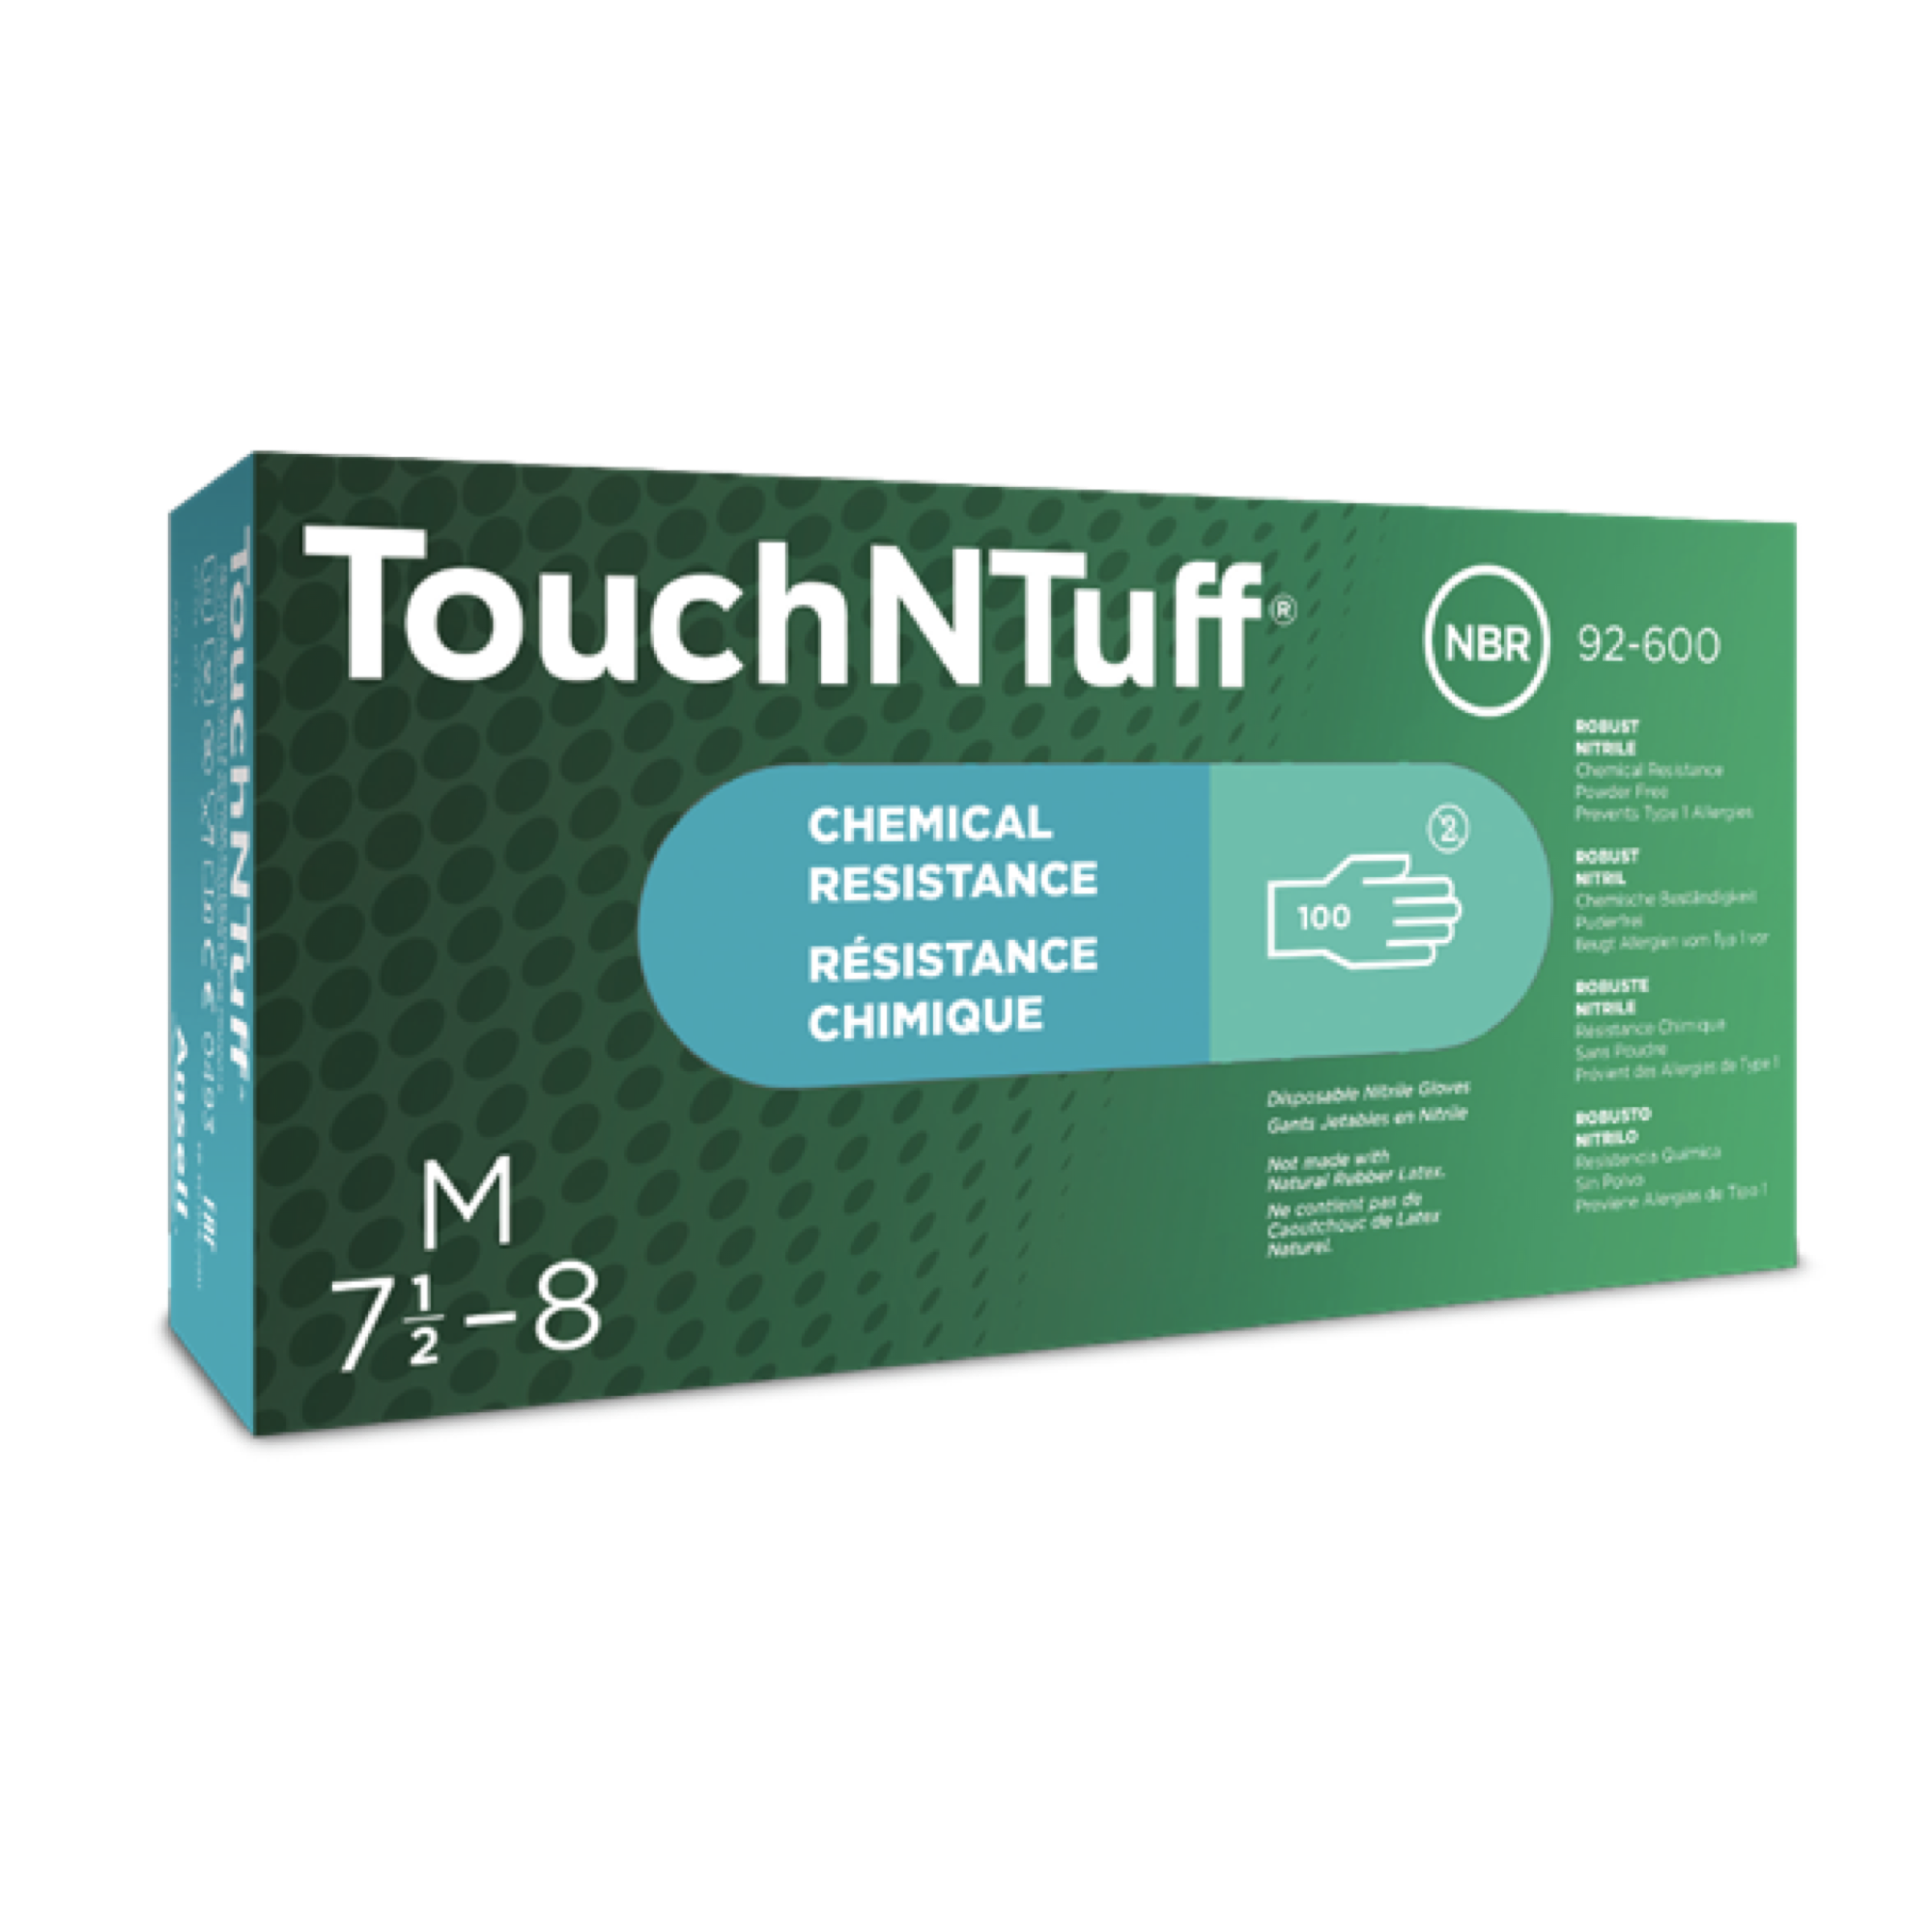 ถุงมือไนไตร Ansell TouchNTuff 92-600 ป้องกันสารเคมี ไวรัส  variation3 M